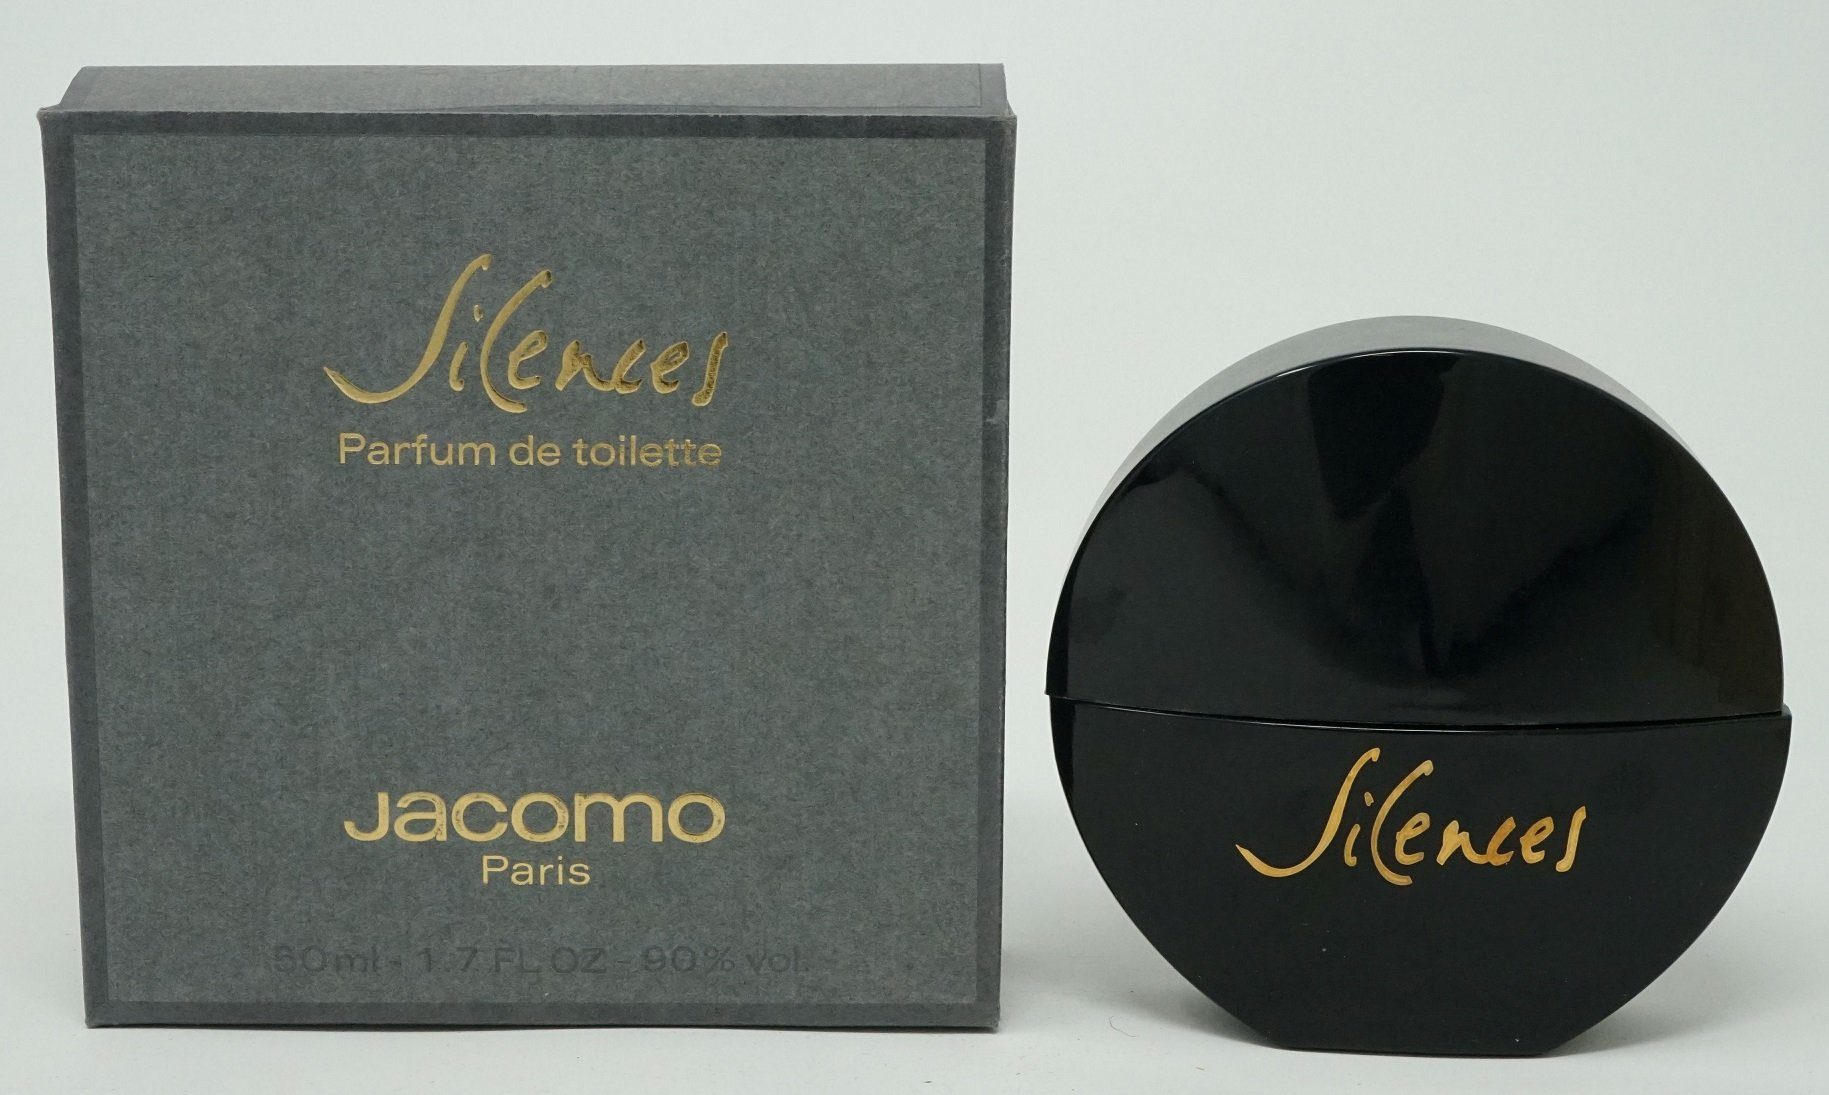 Silences Jacomo 50ml splash Parfum Toilette de Eau Jacomo de Toilette